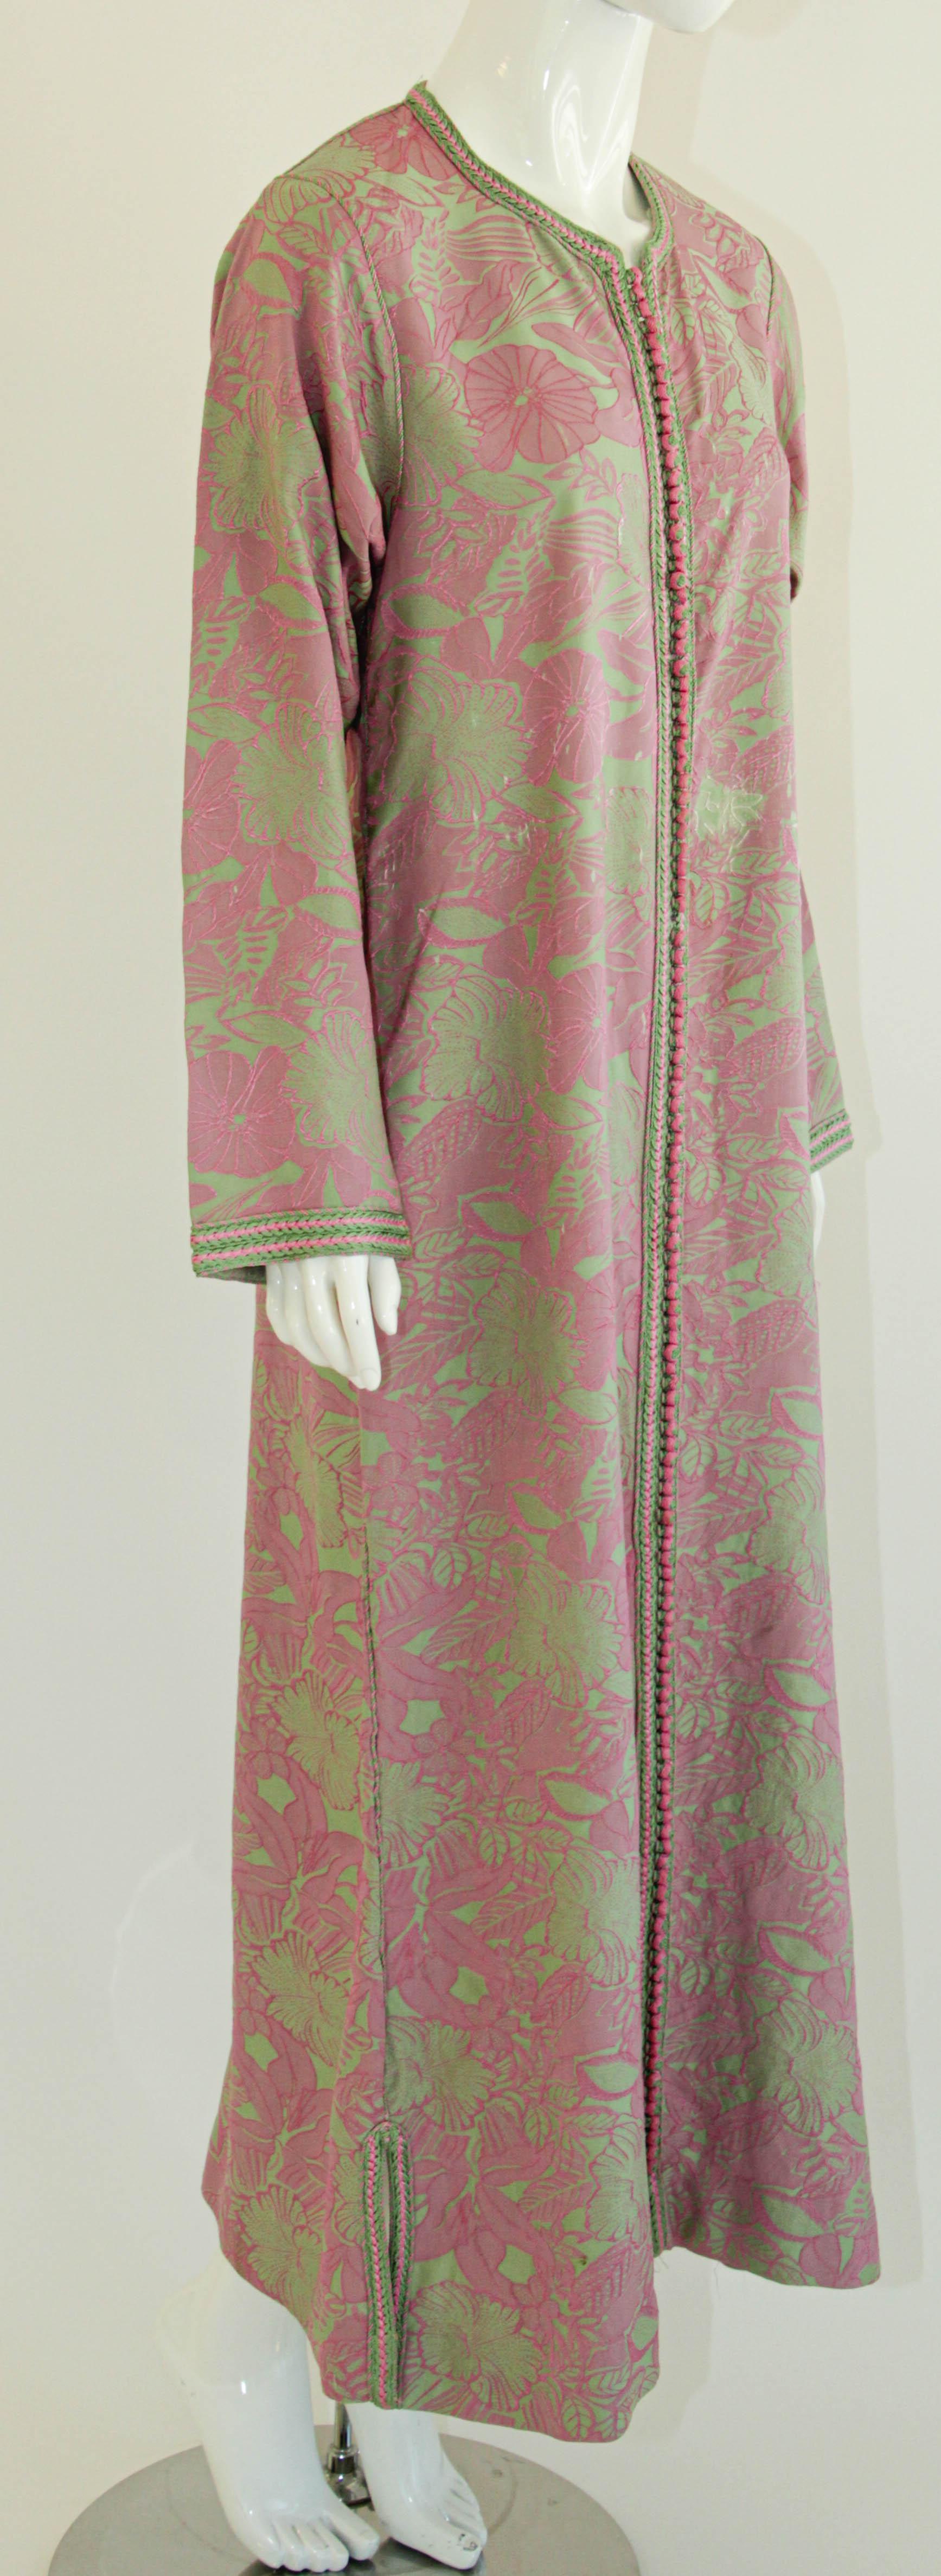 Caftan marocain vintage, brodé avec des bordures roses et vertes.
Cette chic robe maxi kaftan de style bohème est brodée et rehaussée de bordures de fils roses et verts.
Robe kaftan marocaine du Moyen-Orient, unique en son genre, faite sur